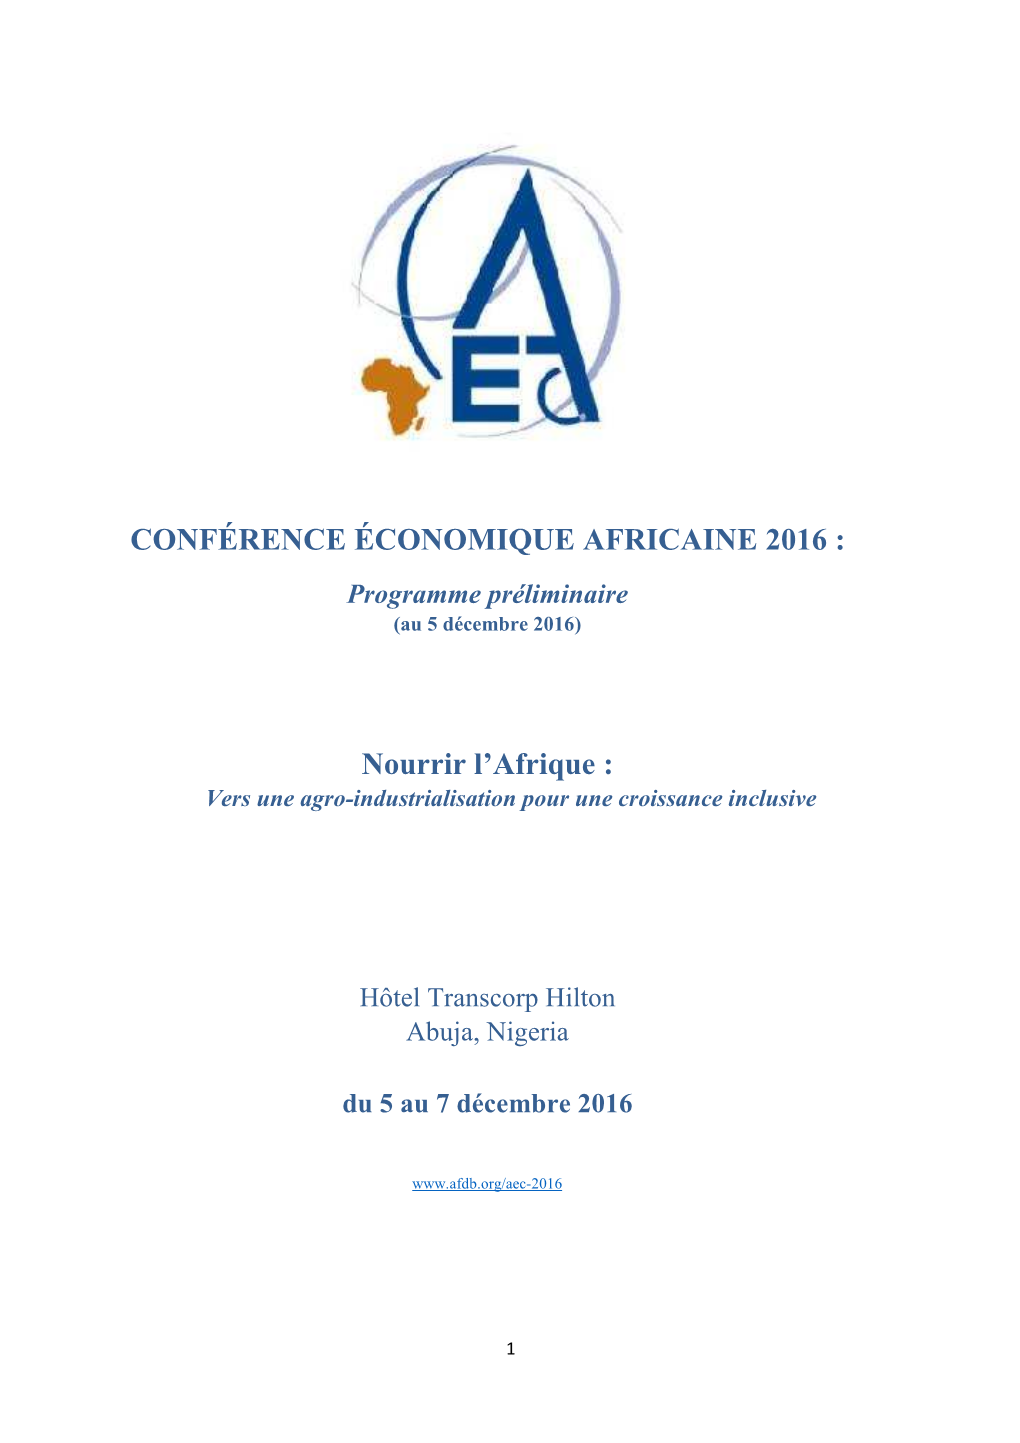 CONFÉRENCE ÉCONOMIQUE AFRICAINE 2016 : Programme Préliminaire (Au 5 Décembre 2016)